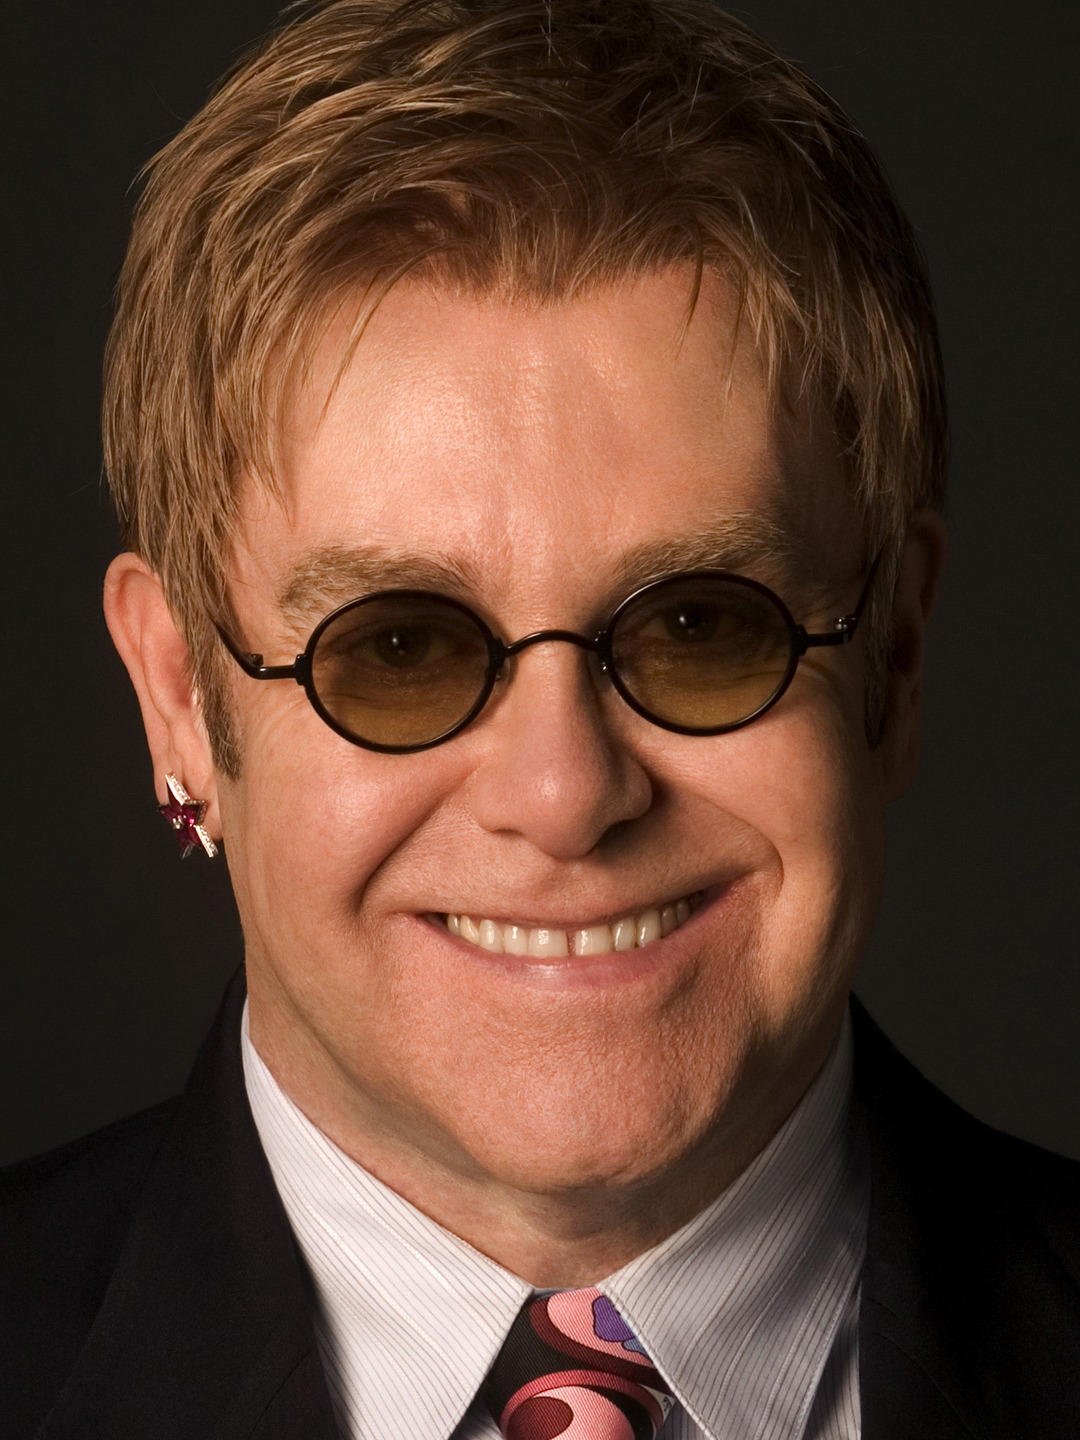 Elton John life story